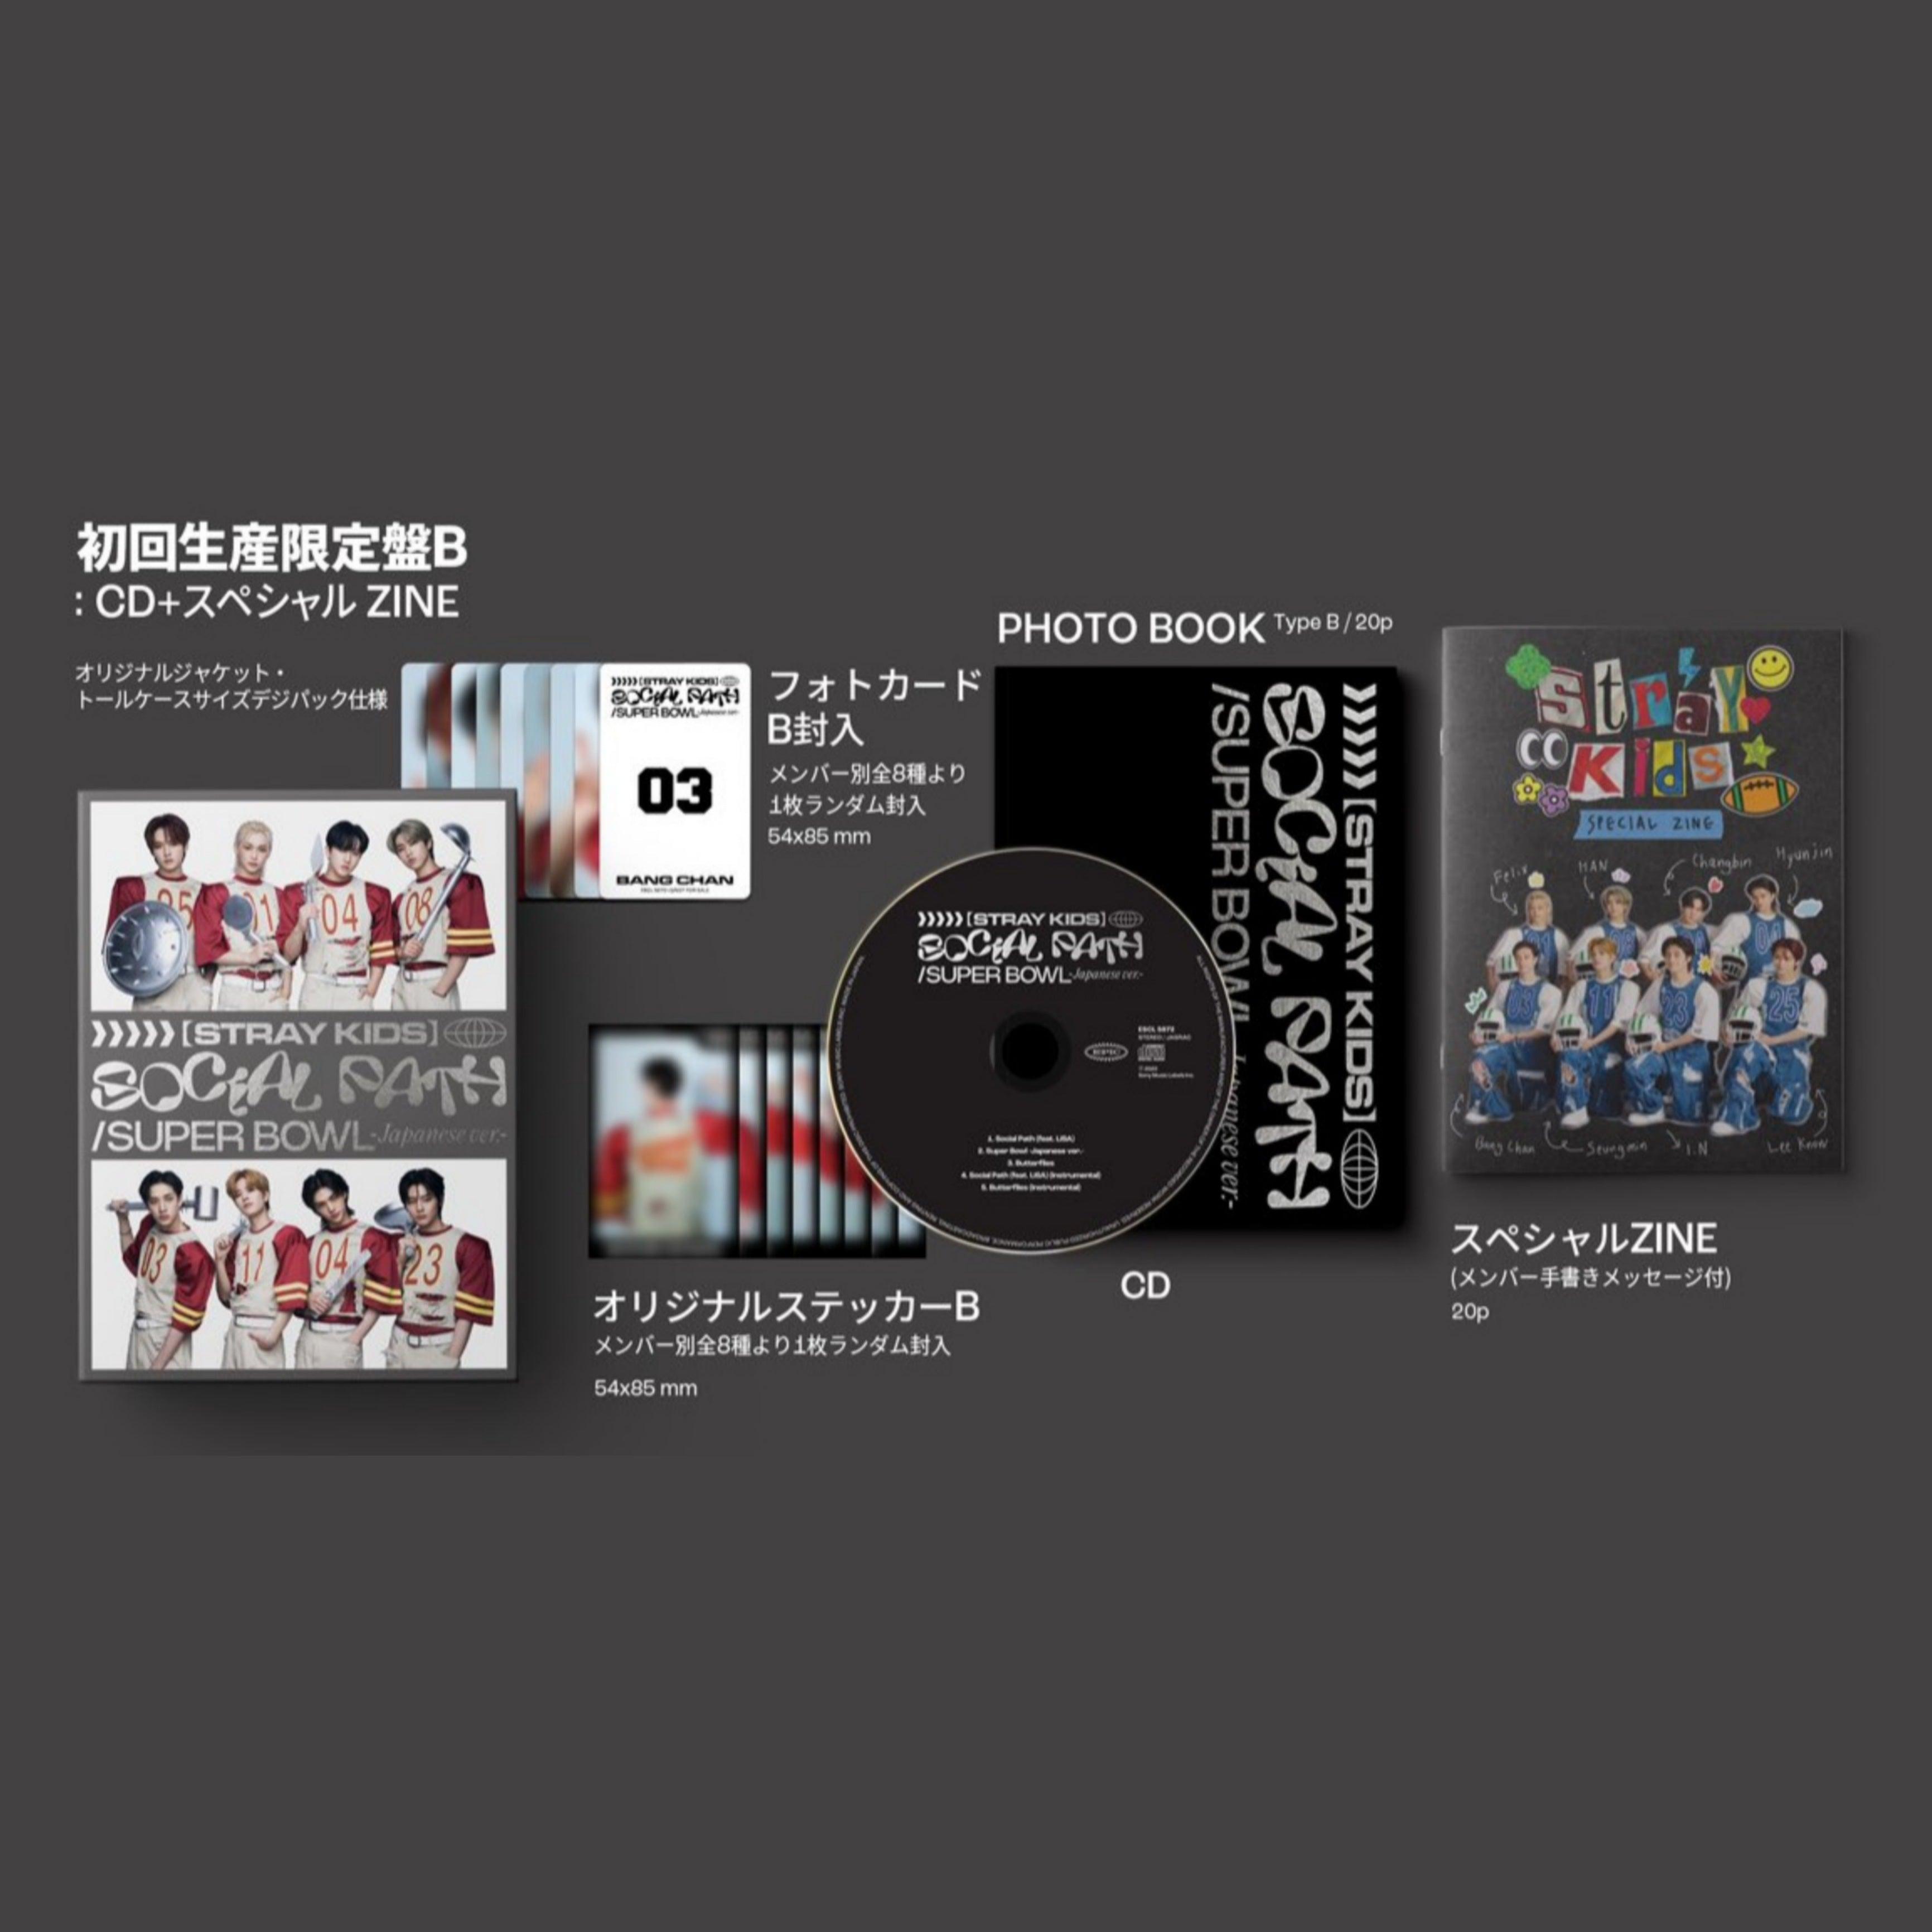 Stray Kids Japan 1st EP - KKANG